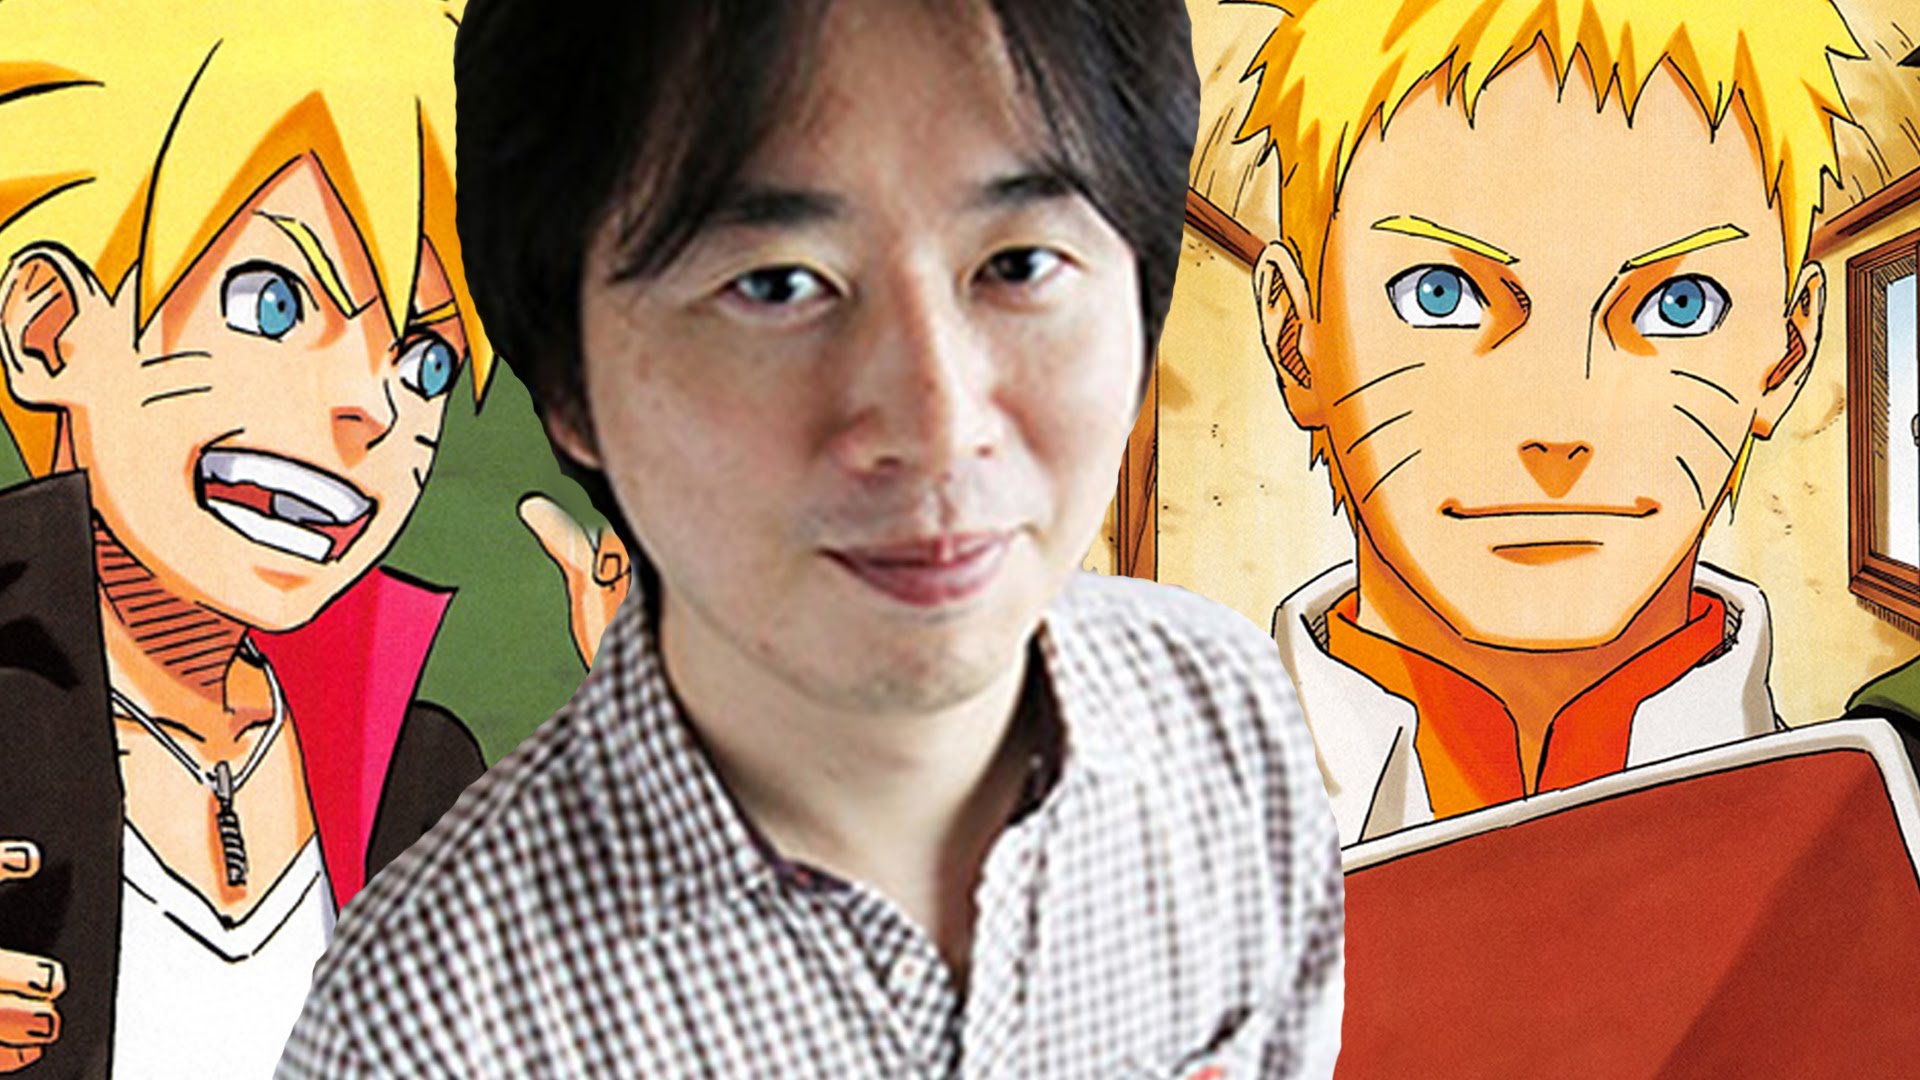 Masashi Kishimoto desenhando Naruto (Hokage), Olha que belíssimo desenho  do nosso querido Masashi Kishimoto, esse cara é um gênio. Marca algum amigo  aí pra se inspirar! Curta nossa página para ficar